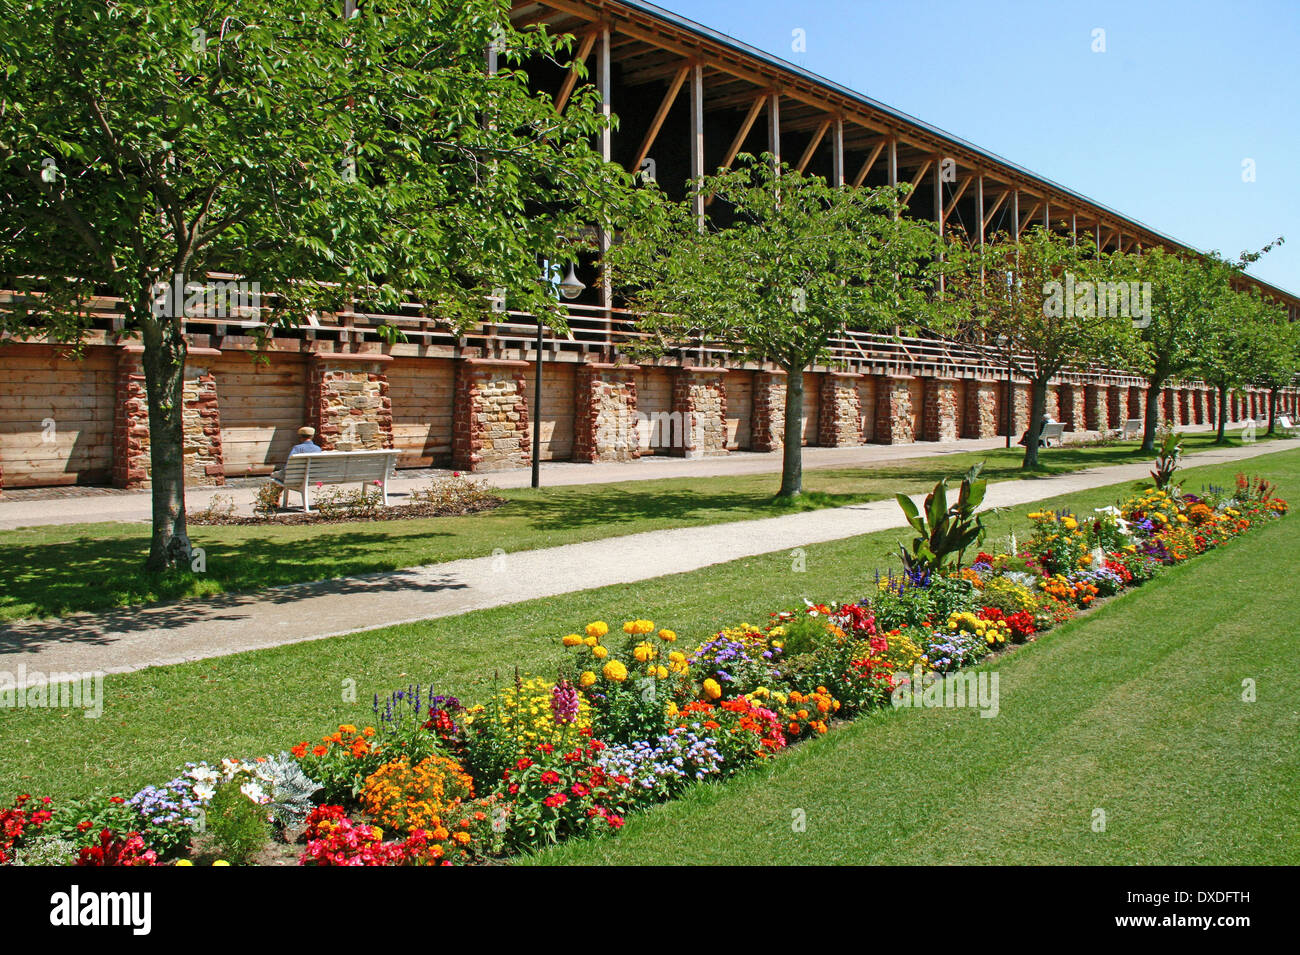 Spa gardens, Bad Durkheim Stock Photo - Alamy